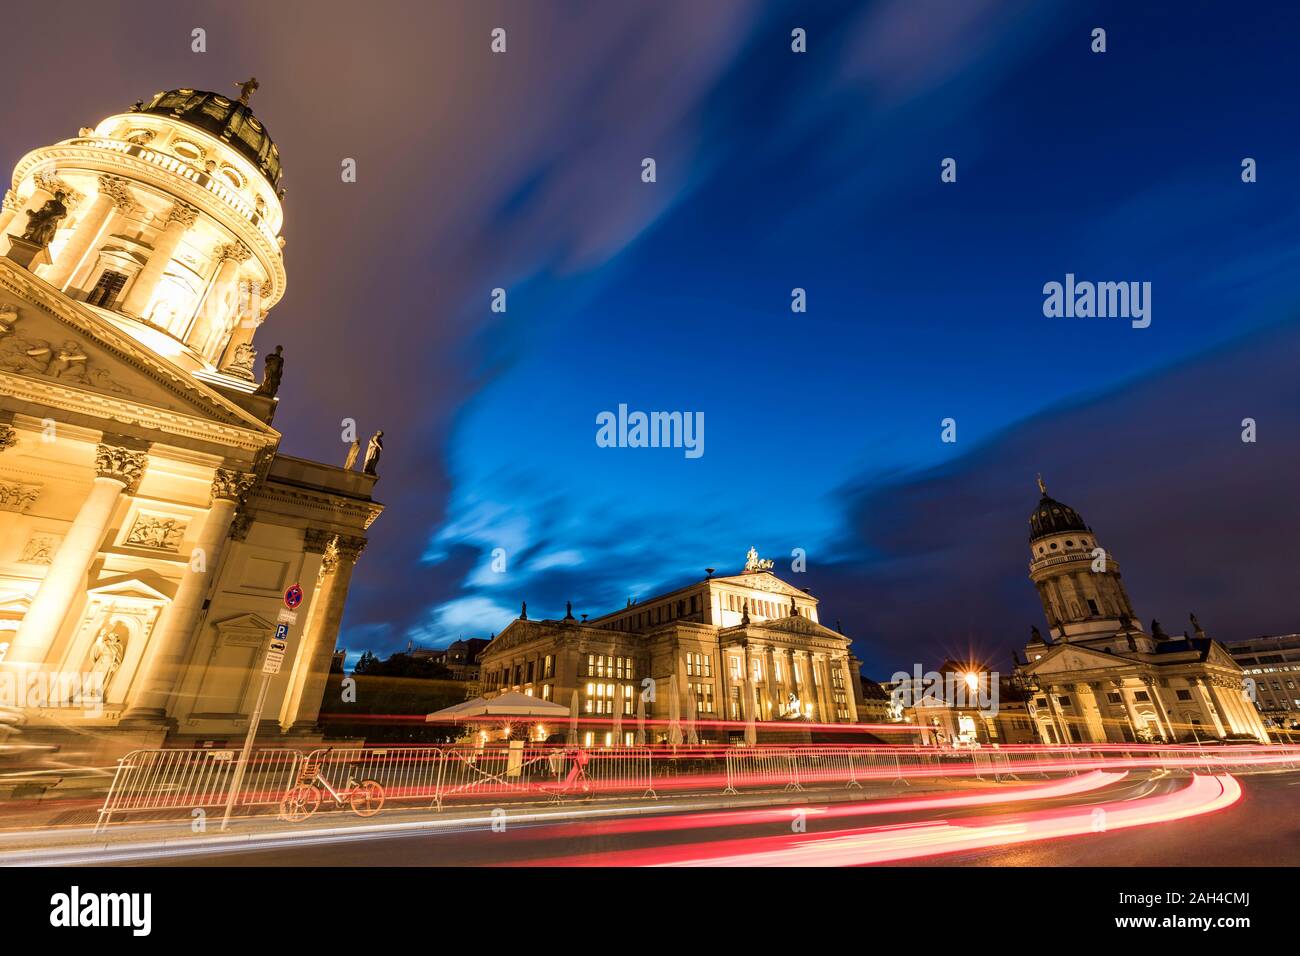 Alemania, Berlín Gendarmenmarkt, Mitte, Alemán, Francés y el Konzerthaus CATEDRAL catedral iluminados al atardecer Foto de stock